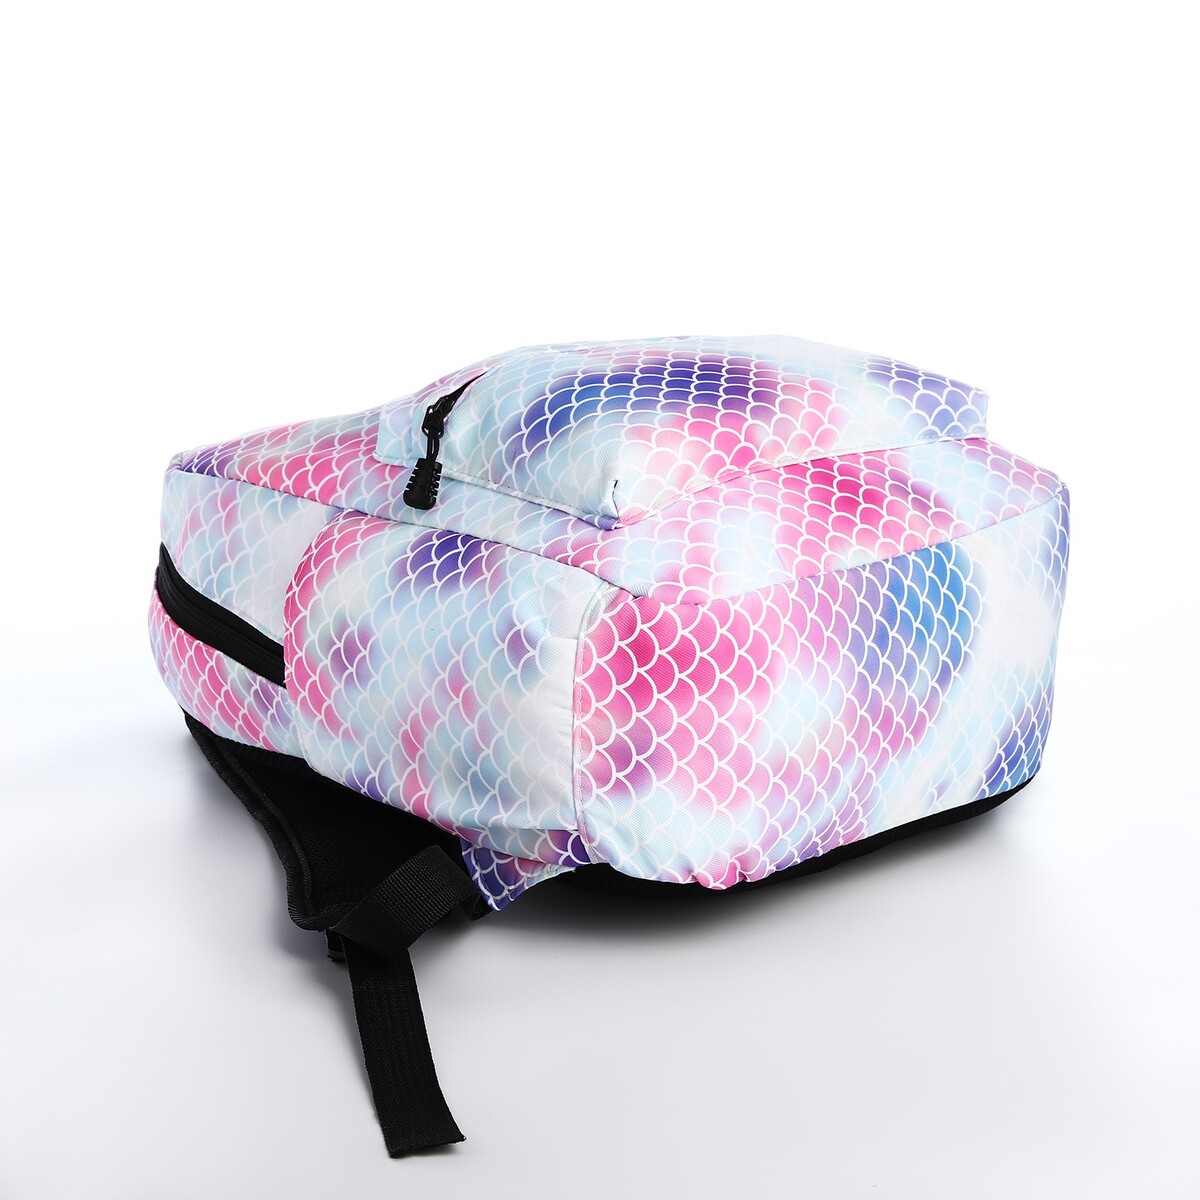 фото Рюкзак молодежный из текстиля на молнии, 3 кармана, поясная сумка, цвет голубой/белый/розовый no brand